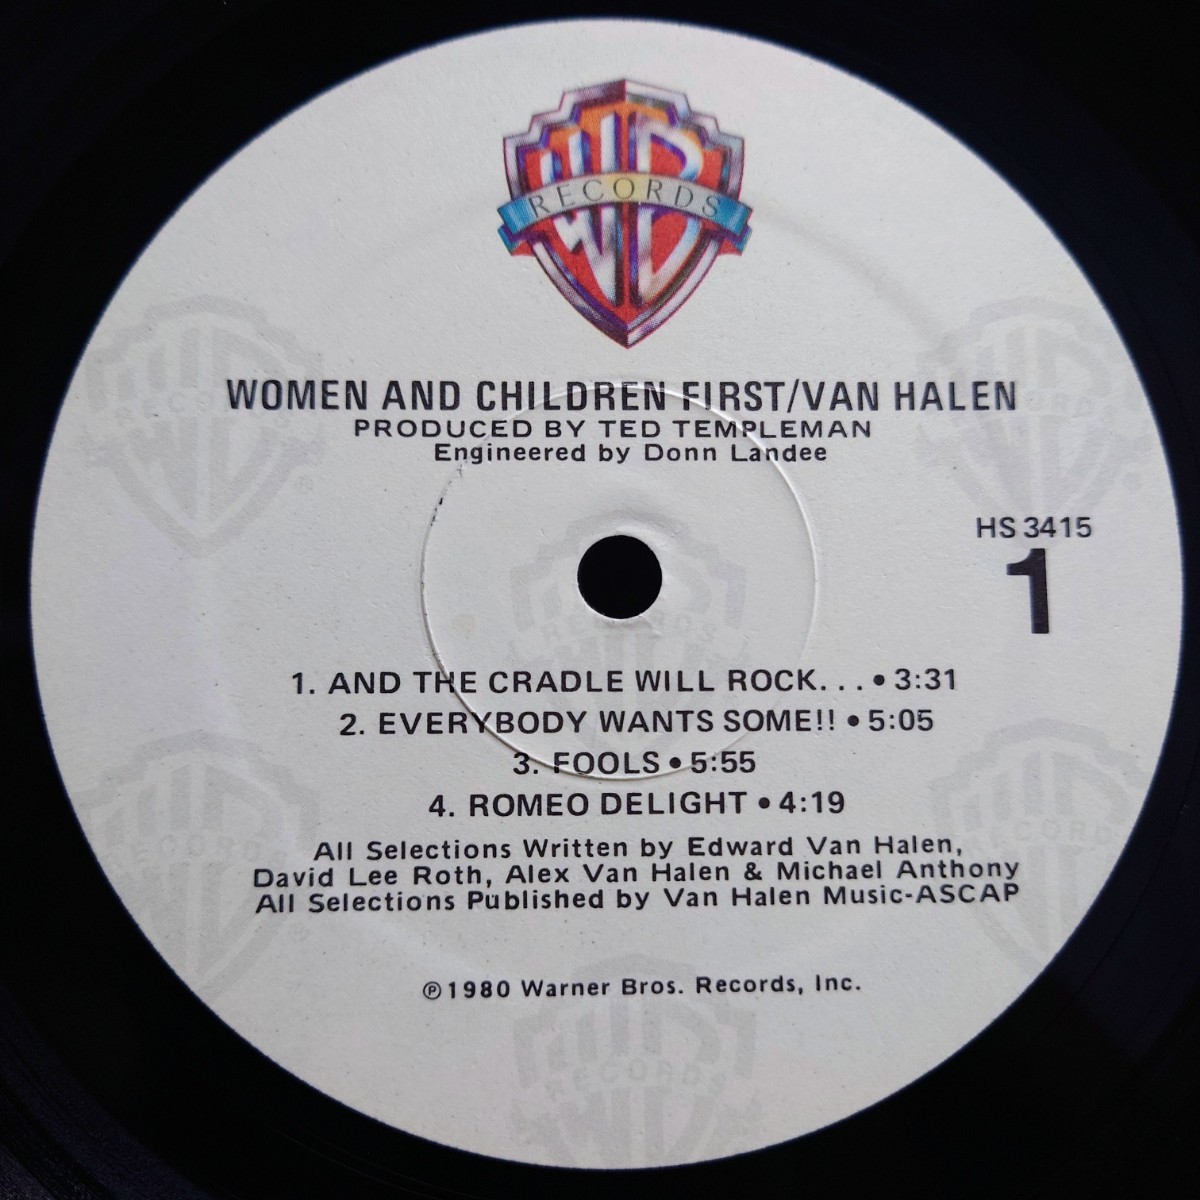 [LP]Van Halen ( Van * partition Len ) Women And Children First( darkness. .)Warner Bros. Records(US record )